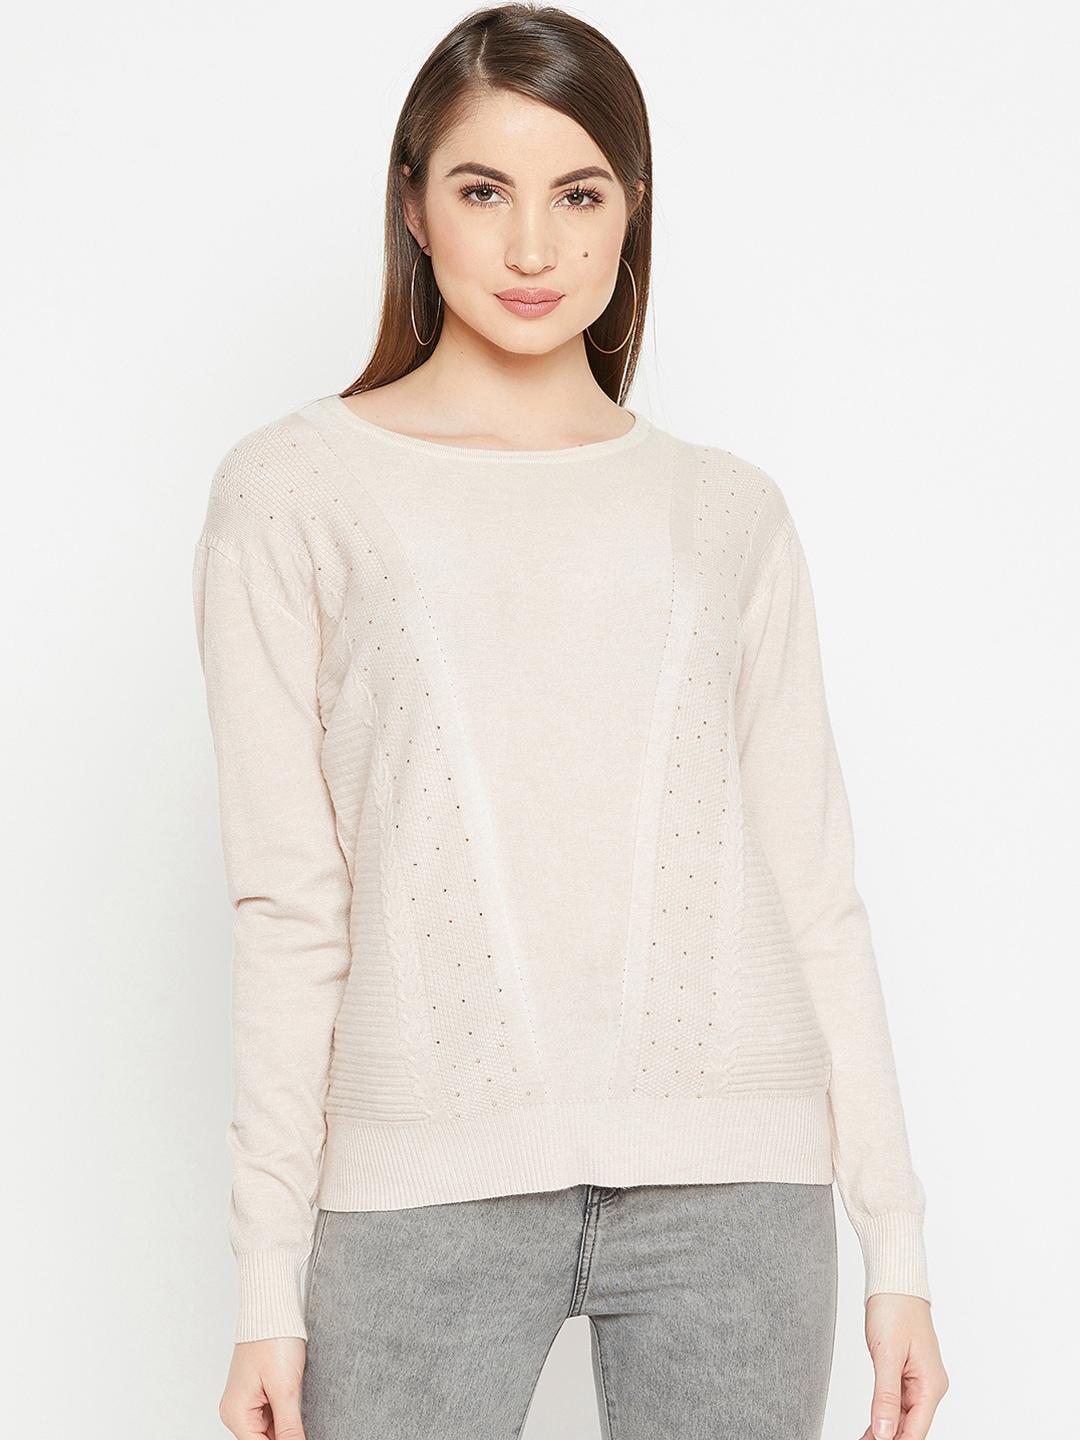 carlton-london-women-beige-solid-pullover-sweater